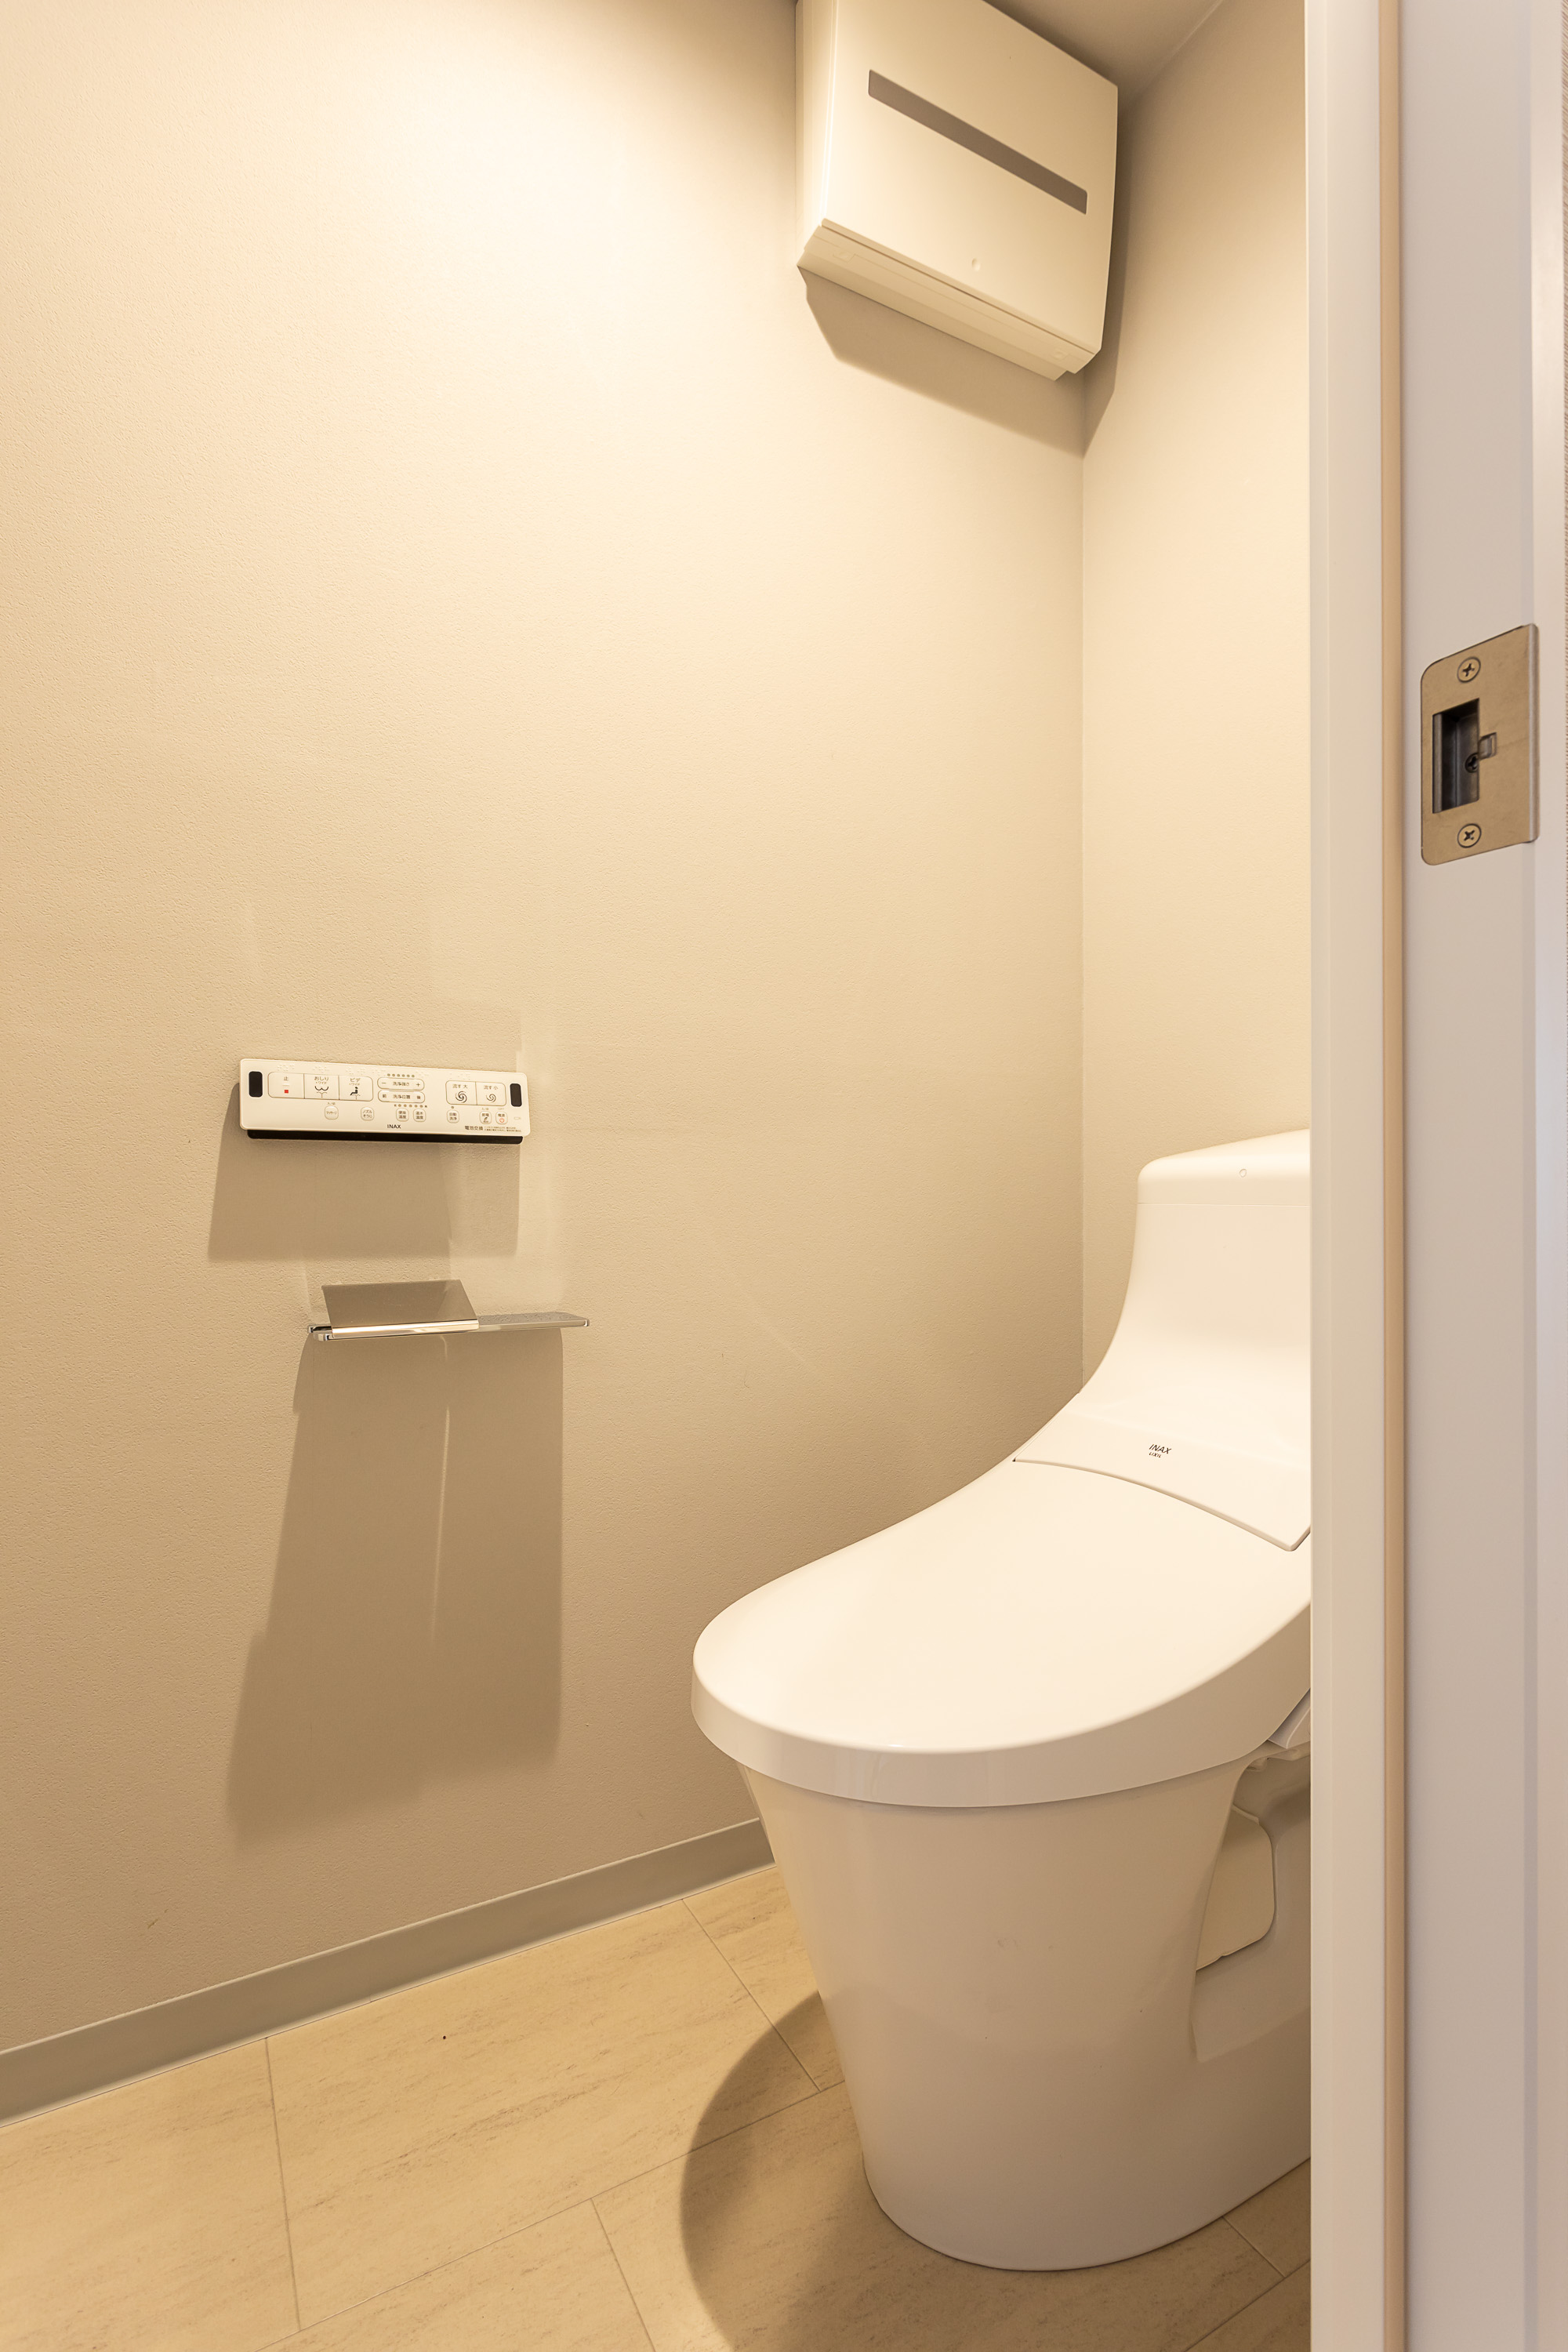 温水洗浄便座付トイレ。上部には収納スペースを設置しており、トイレットペーパーや掃除用品をしまえます。(2022年2月)